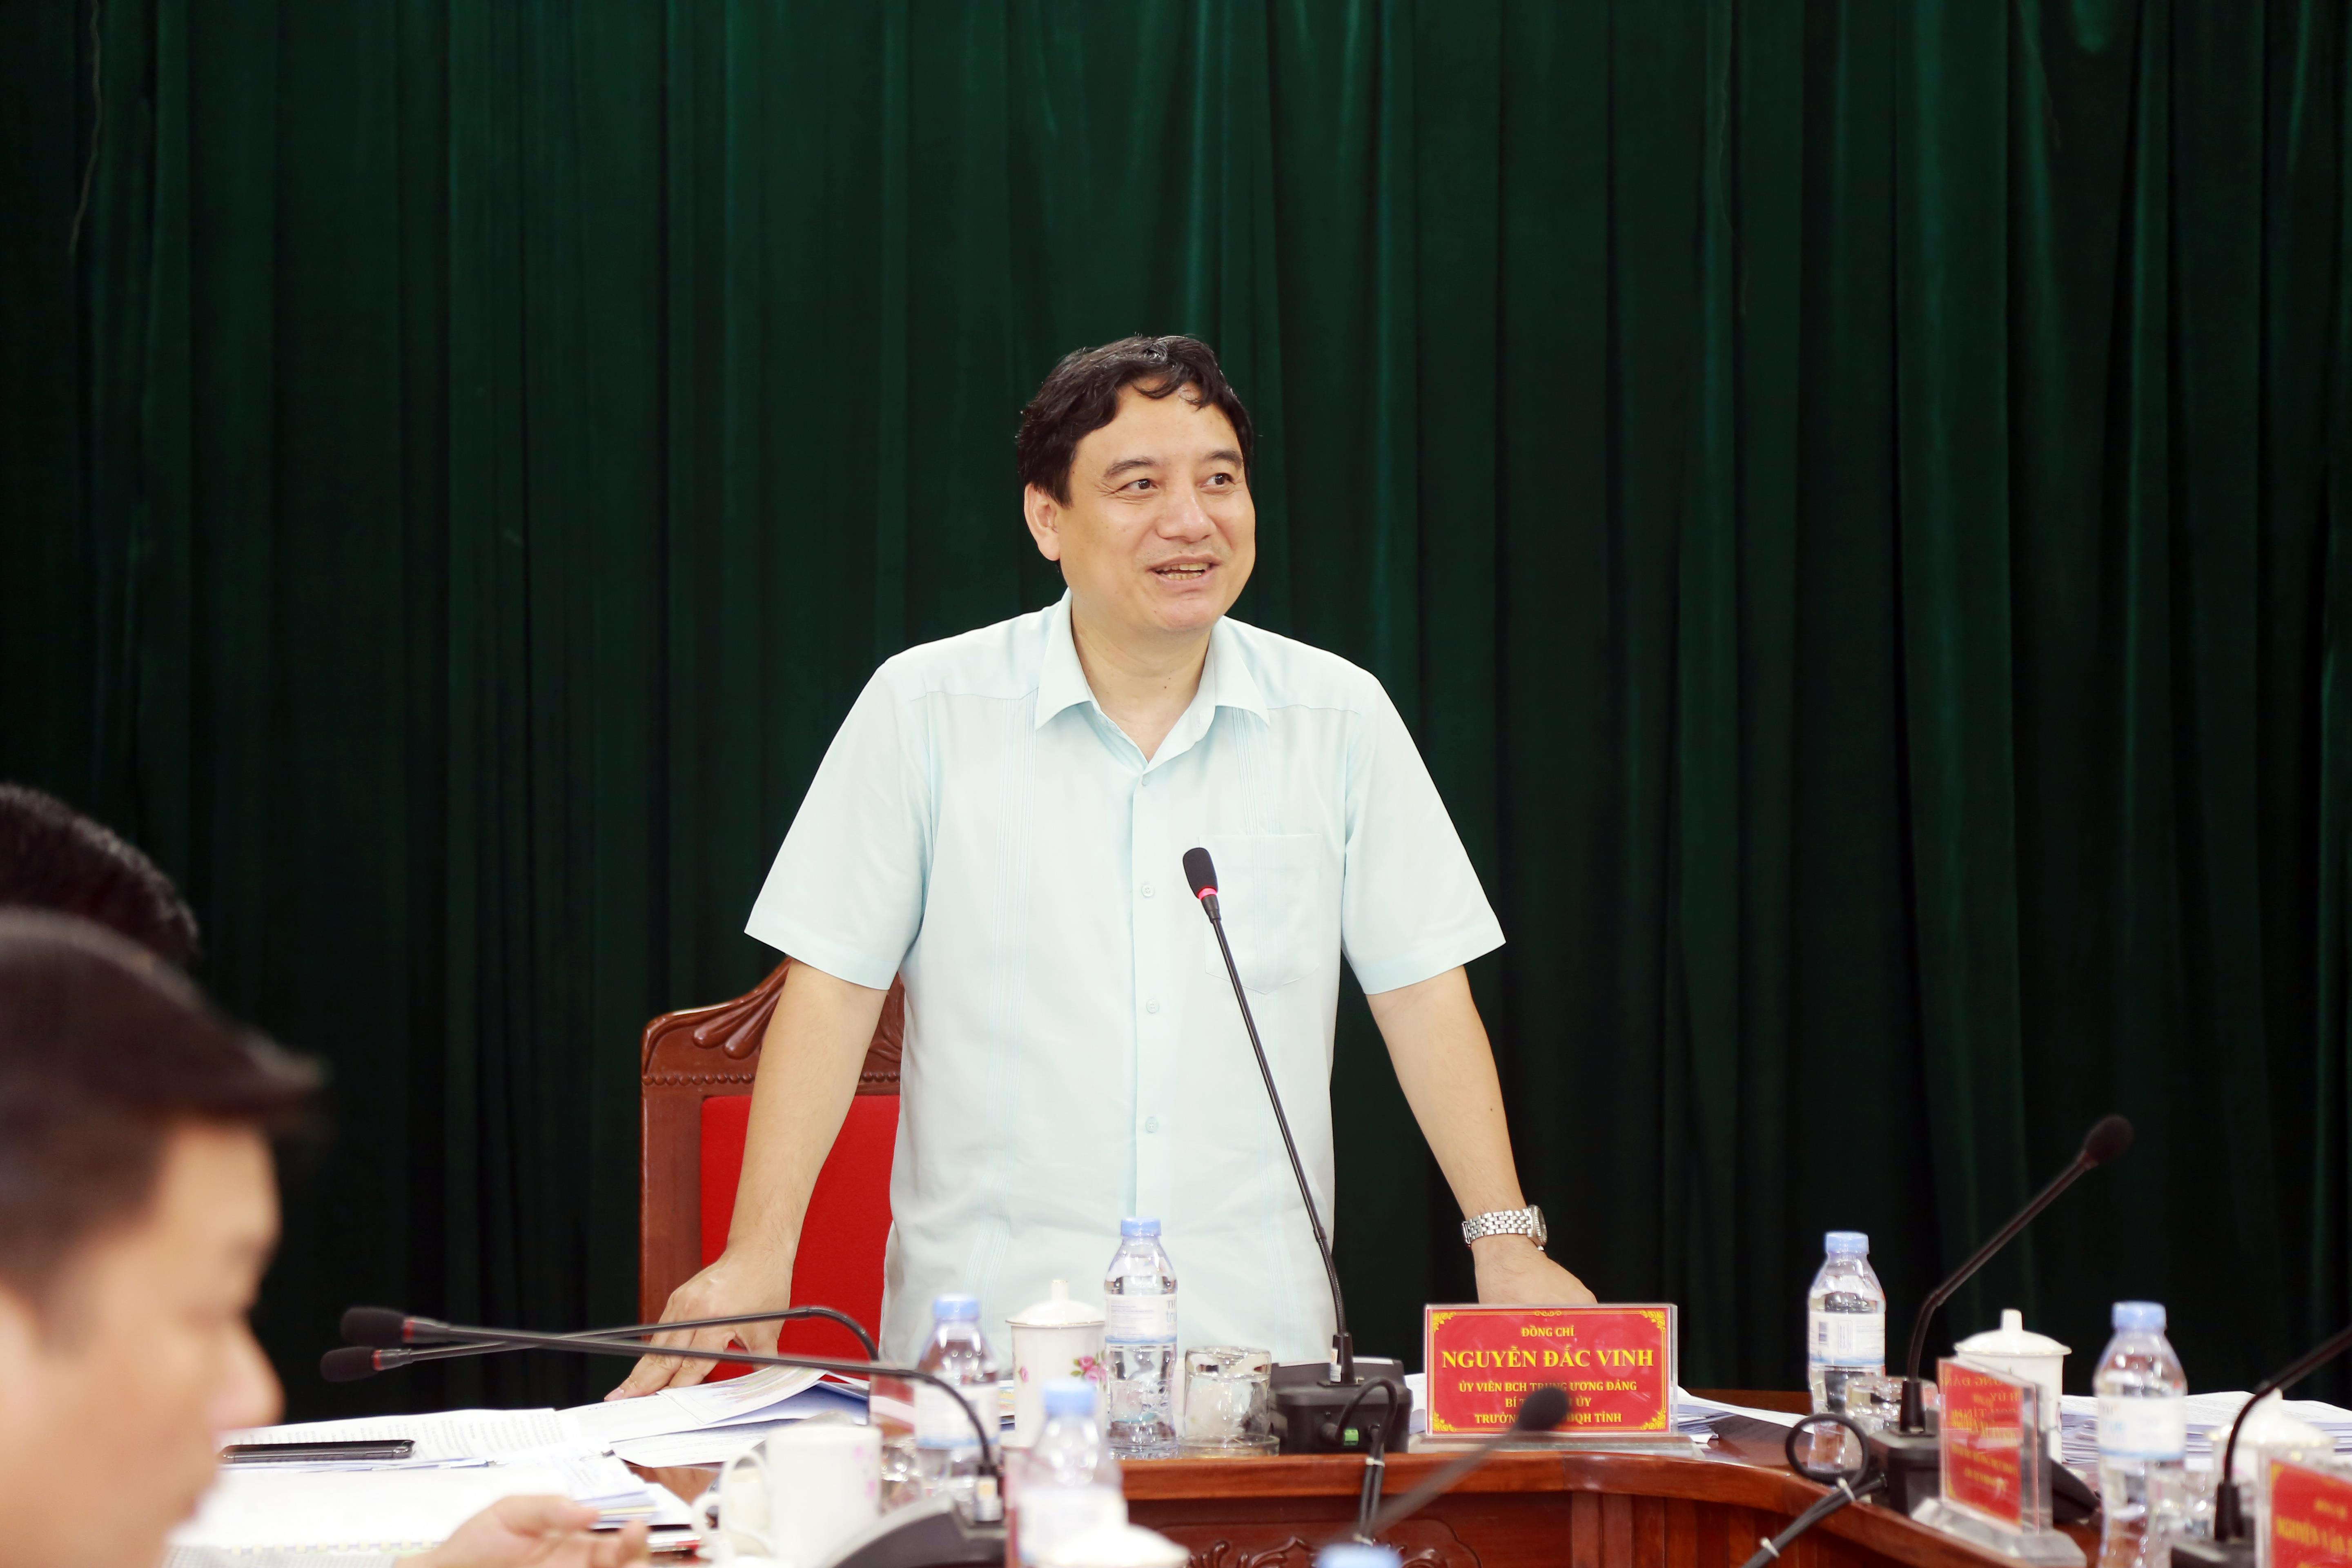 Bí thư Tỉnh ủy Nguyễn Đắc Vinh kết luận phiên làm việc. Ảnh: Đào Tuấn